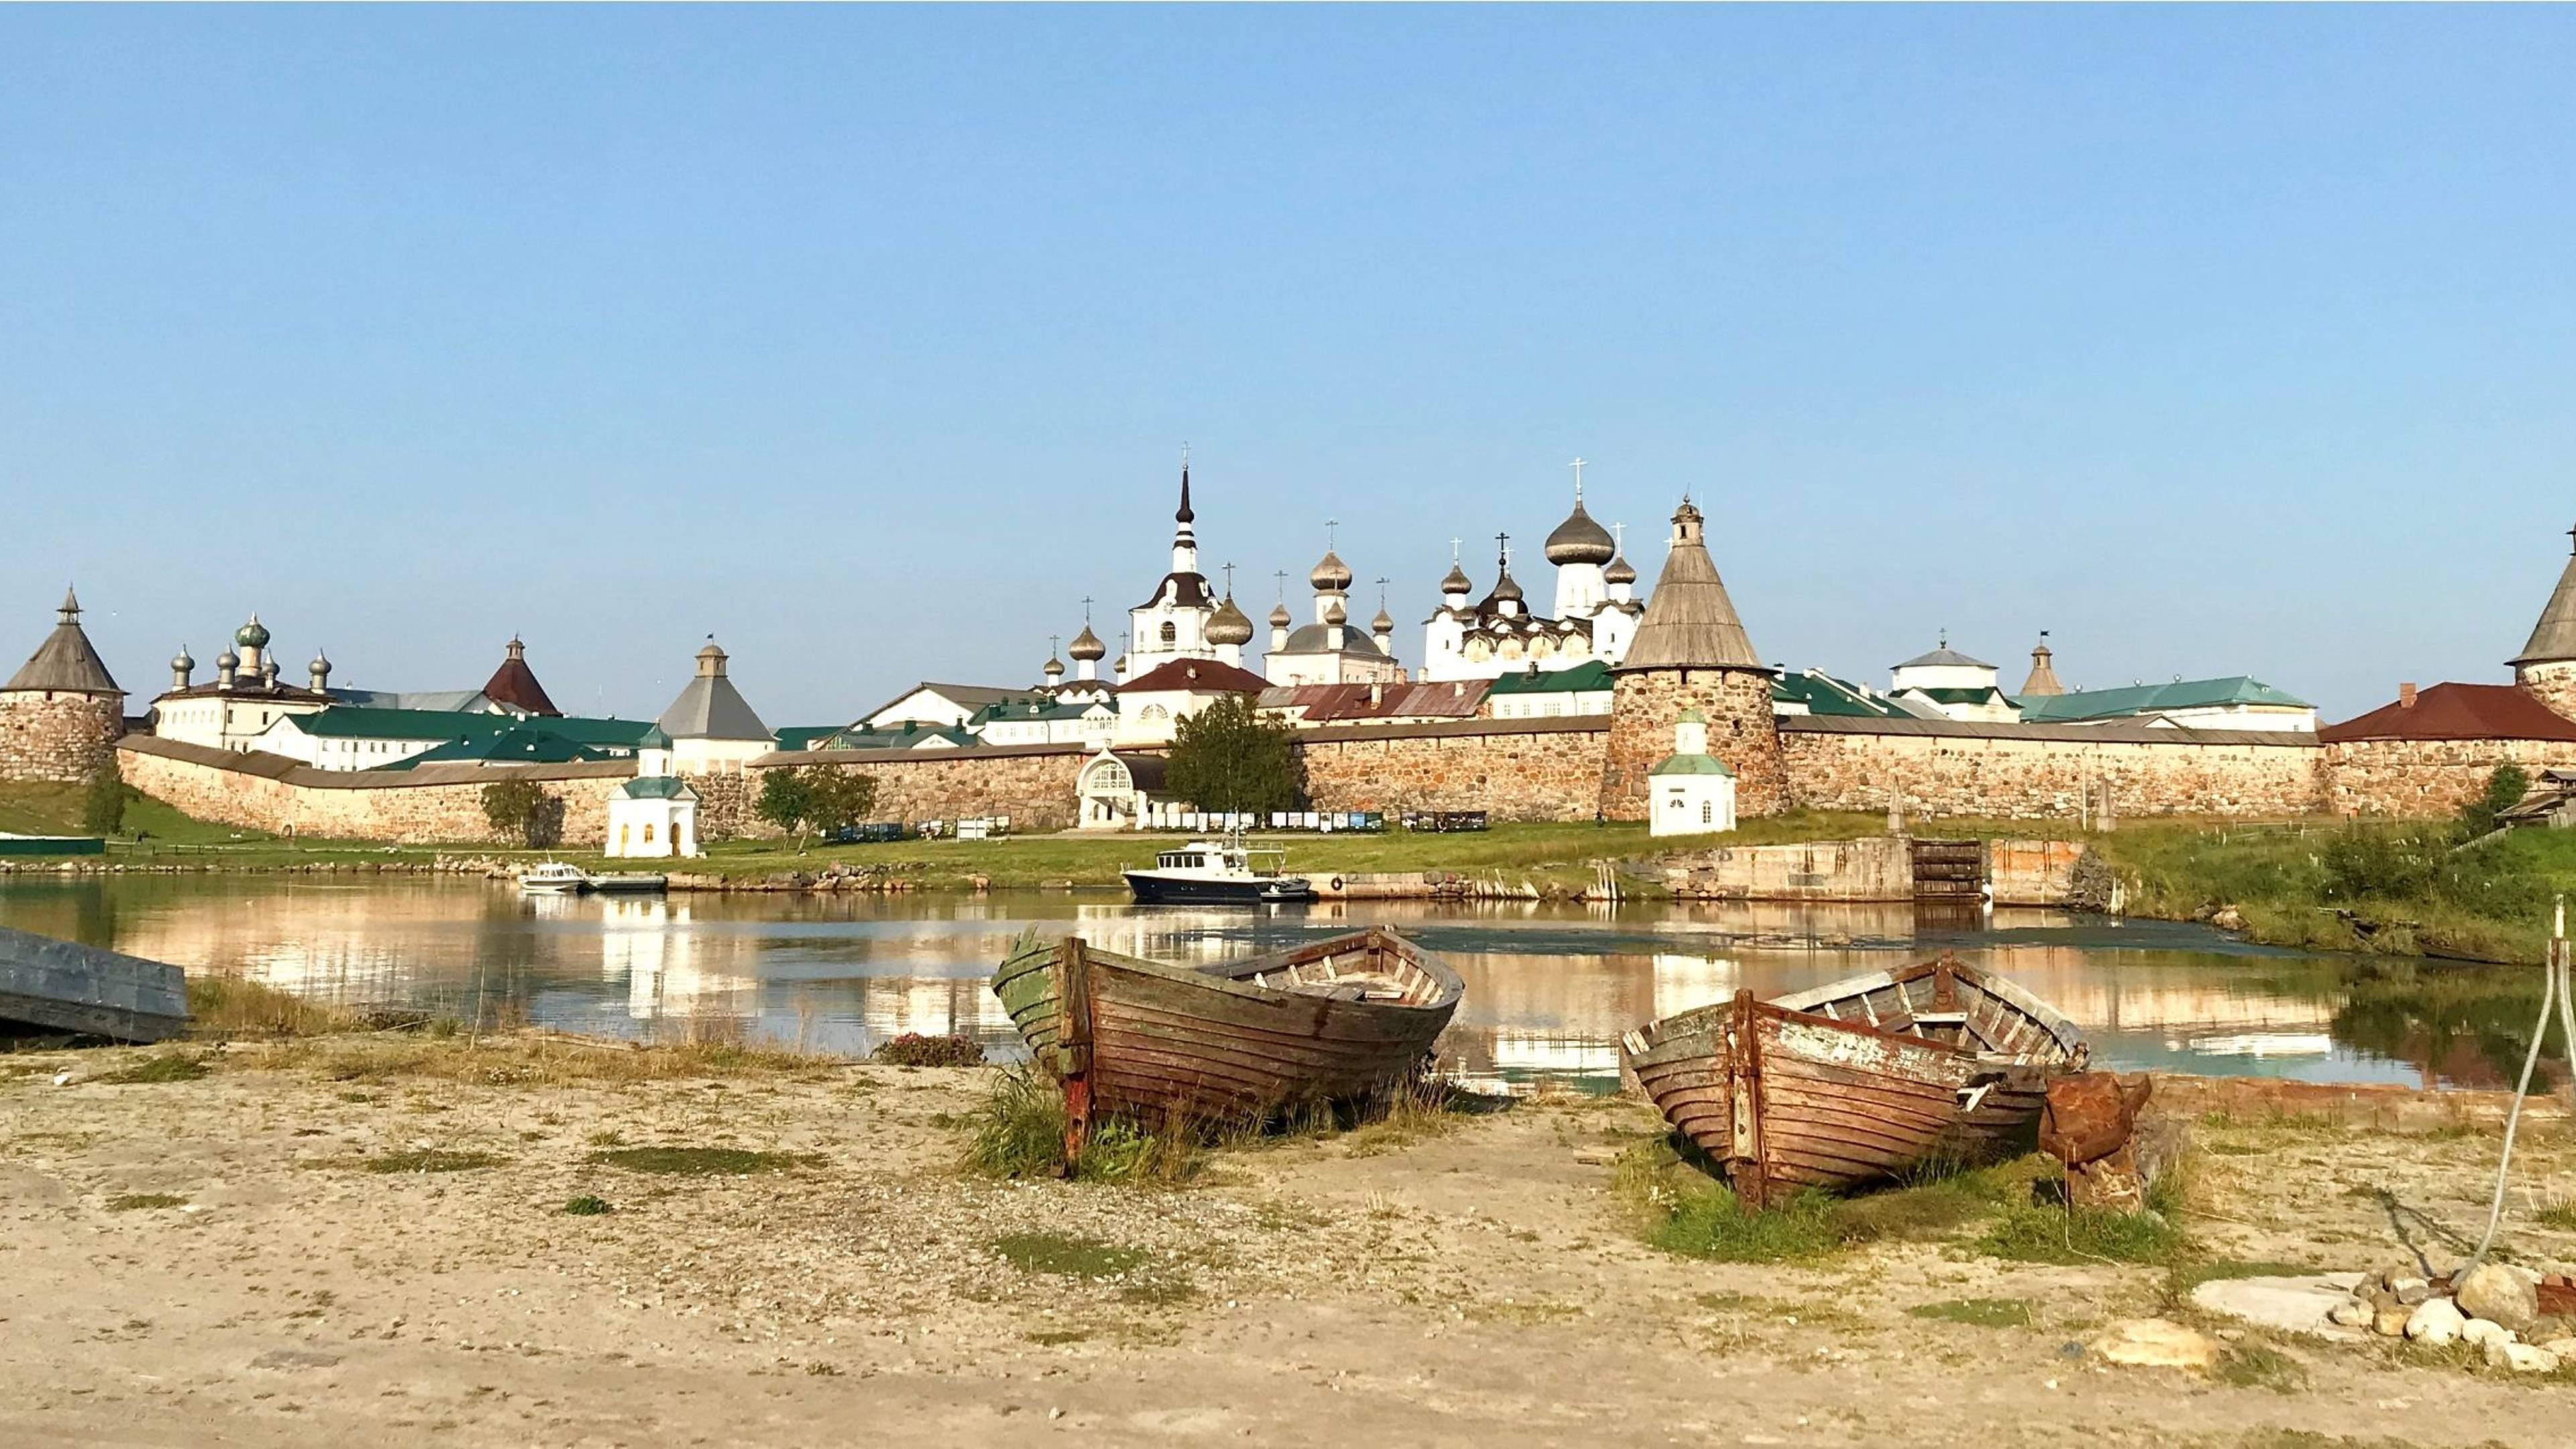 Le bellezze e gli enigmi del nord: San Pietroburgo e le isole Solovki